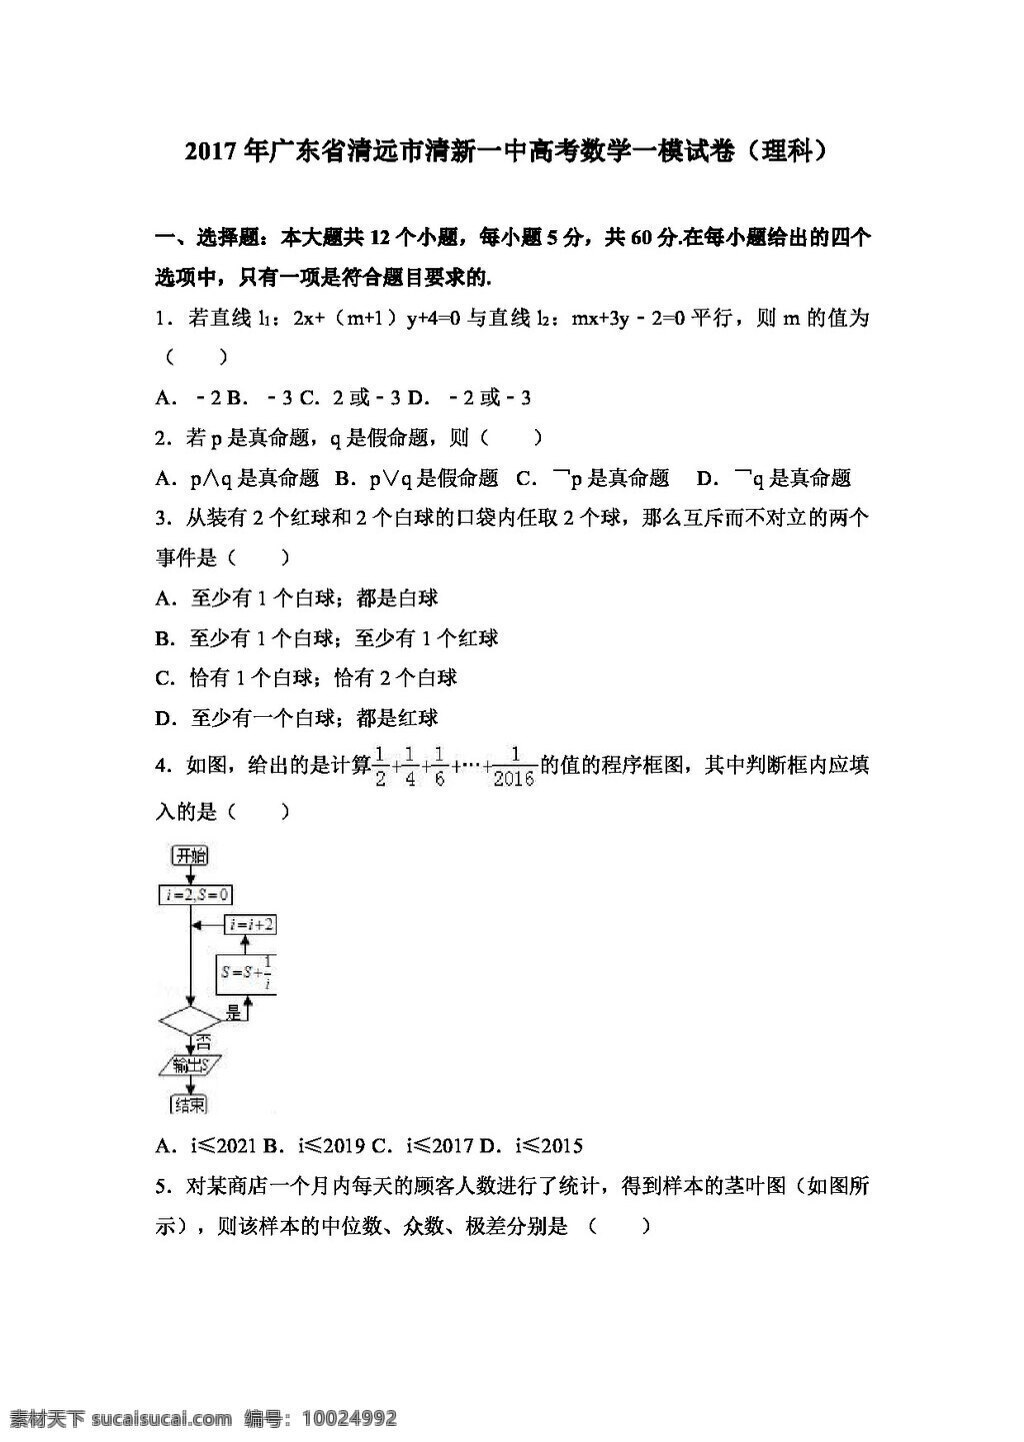 数学 人教 版 2017 年 广东省 清远市 清新 一中 高考 模 试卷 理科 高考专区 人教版